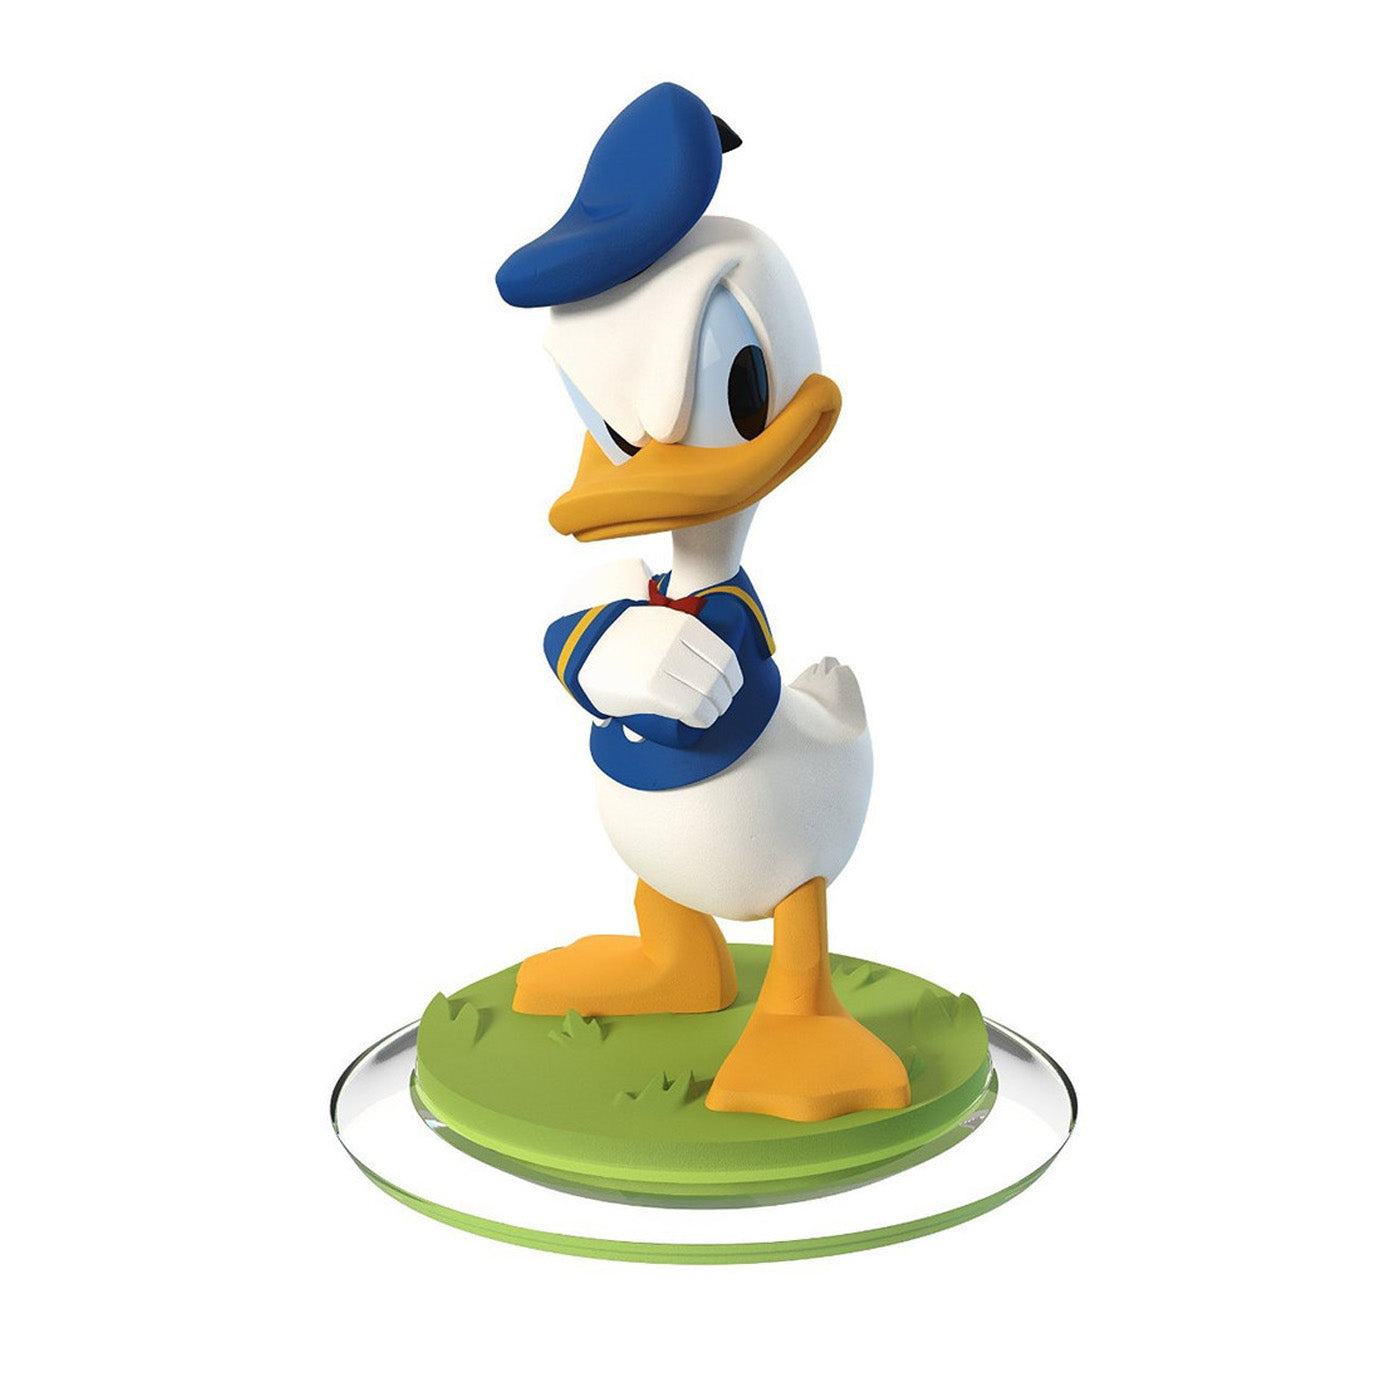 Disney Infinity 2.0 Character: Donald Duck